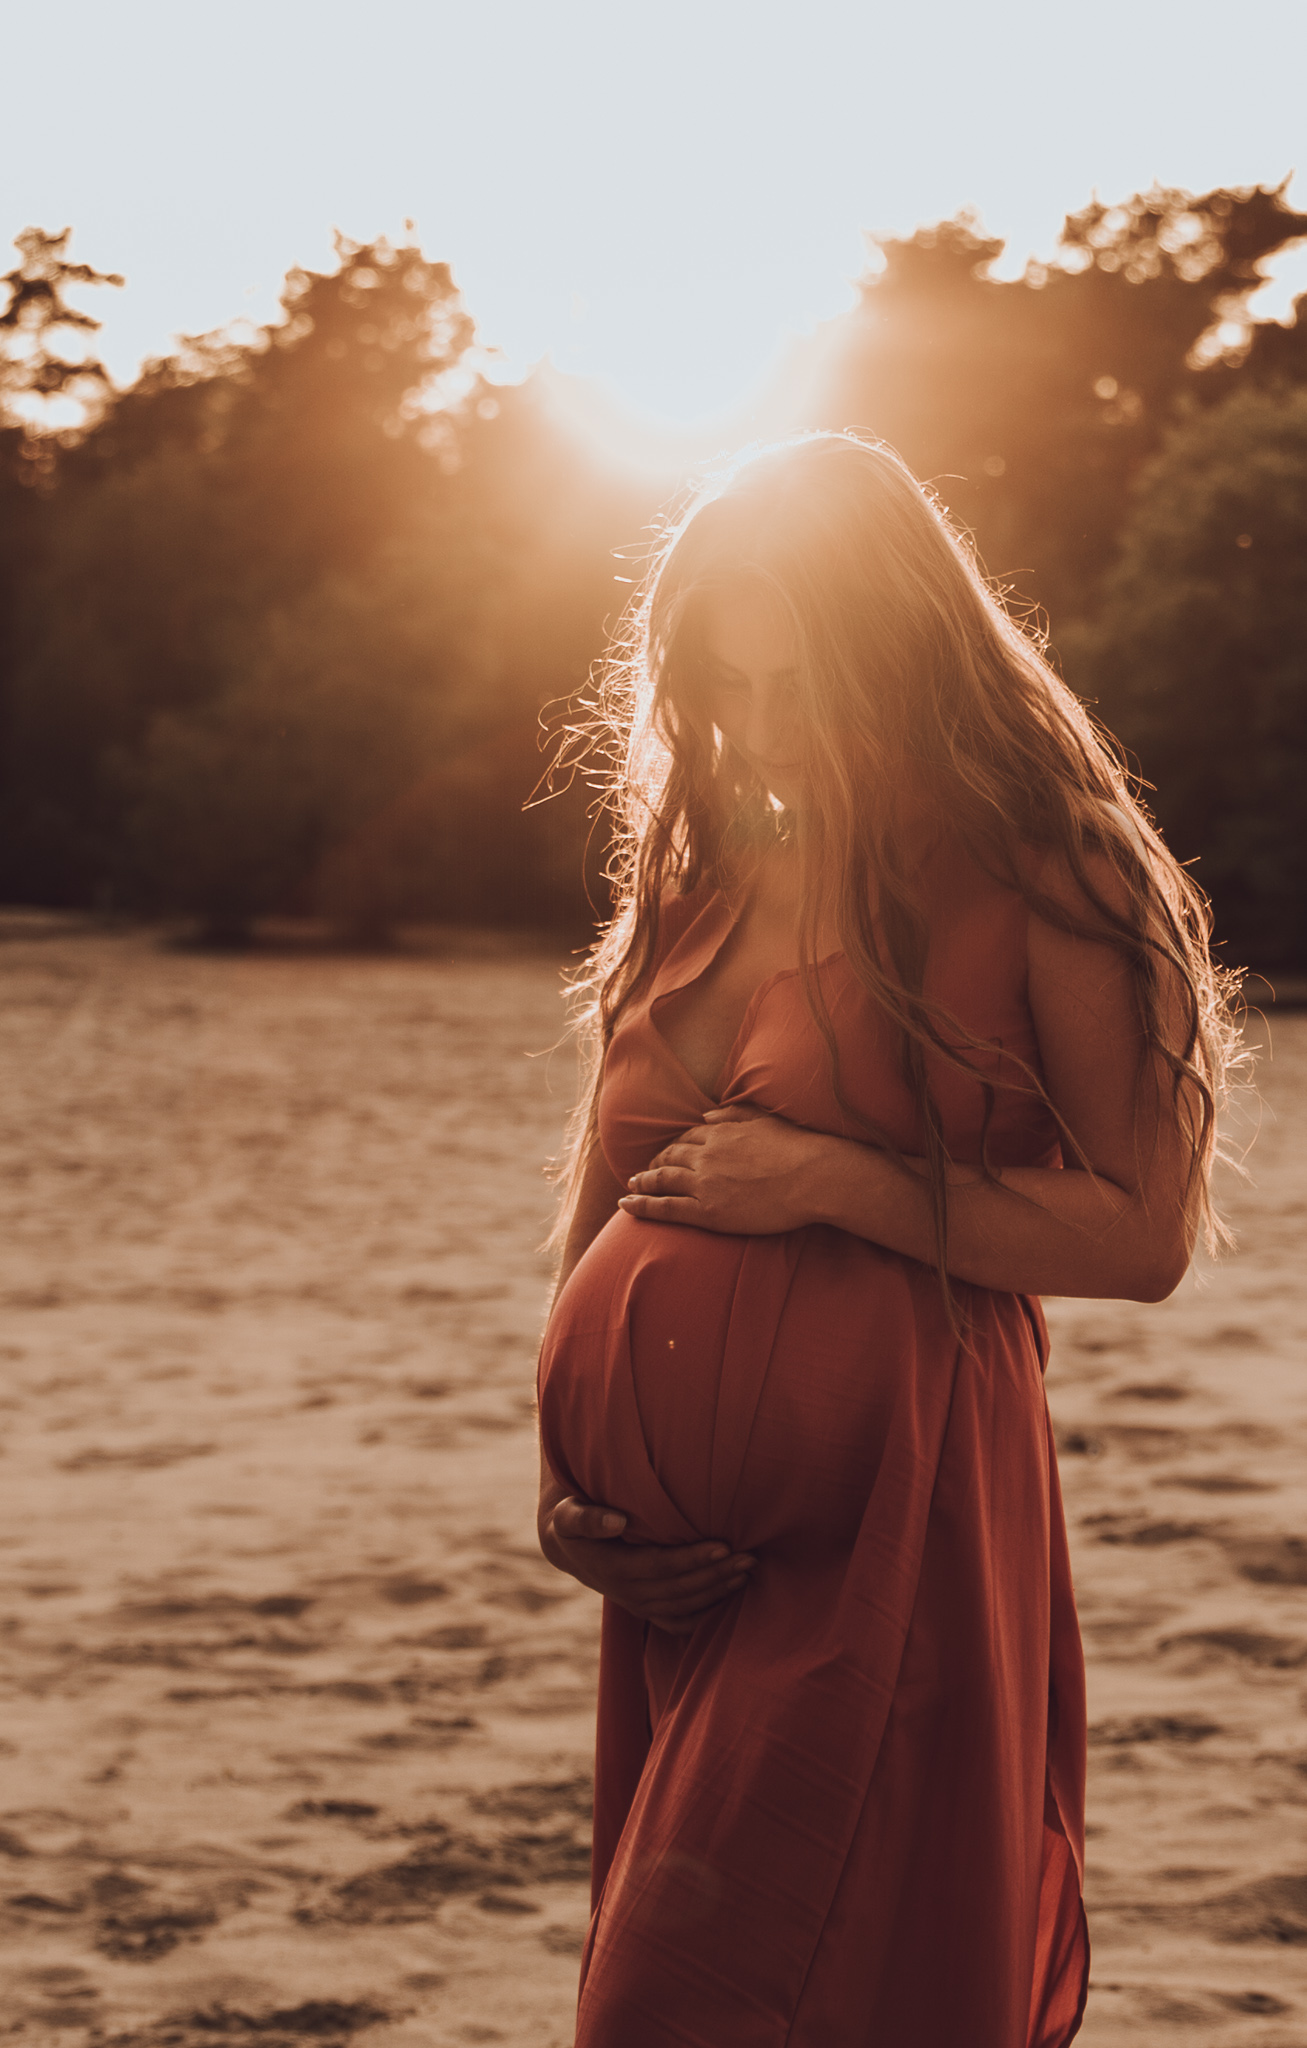 Zwangerschapsfotoshoot door flow photography, zwangere kijkend naar buik